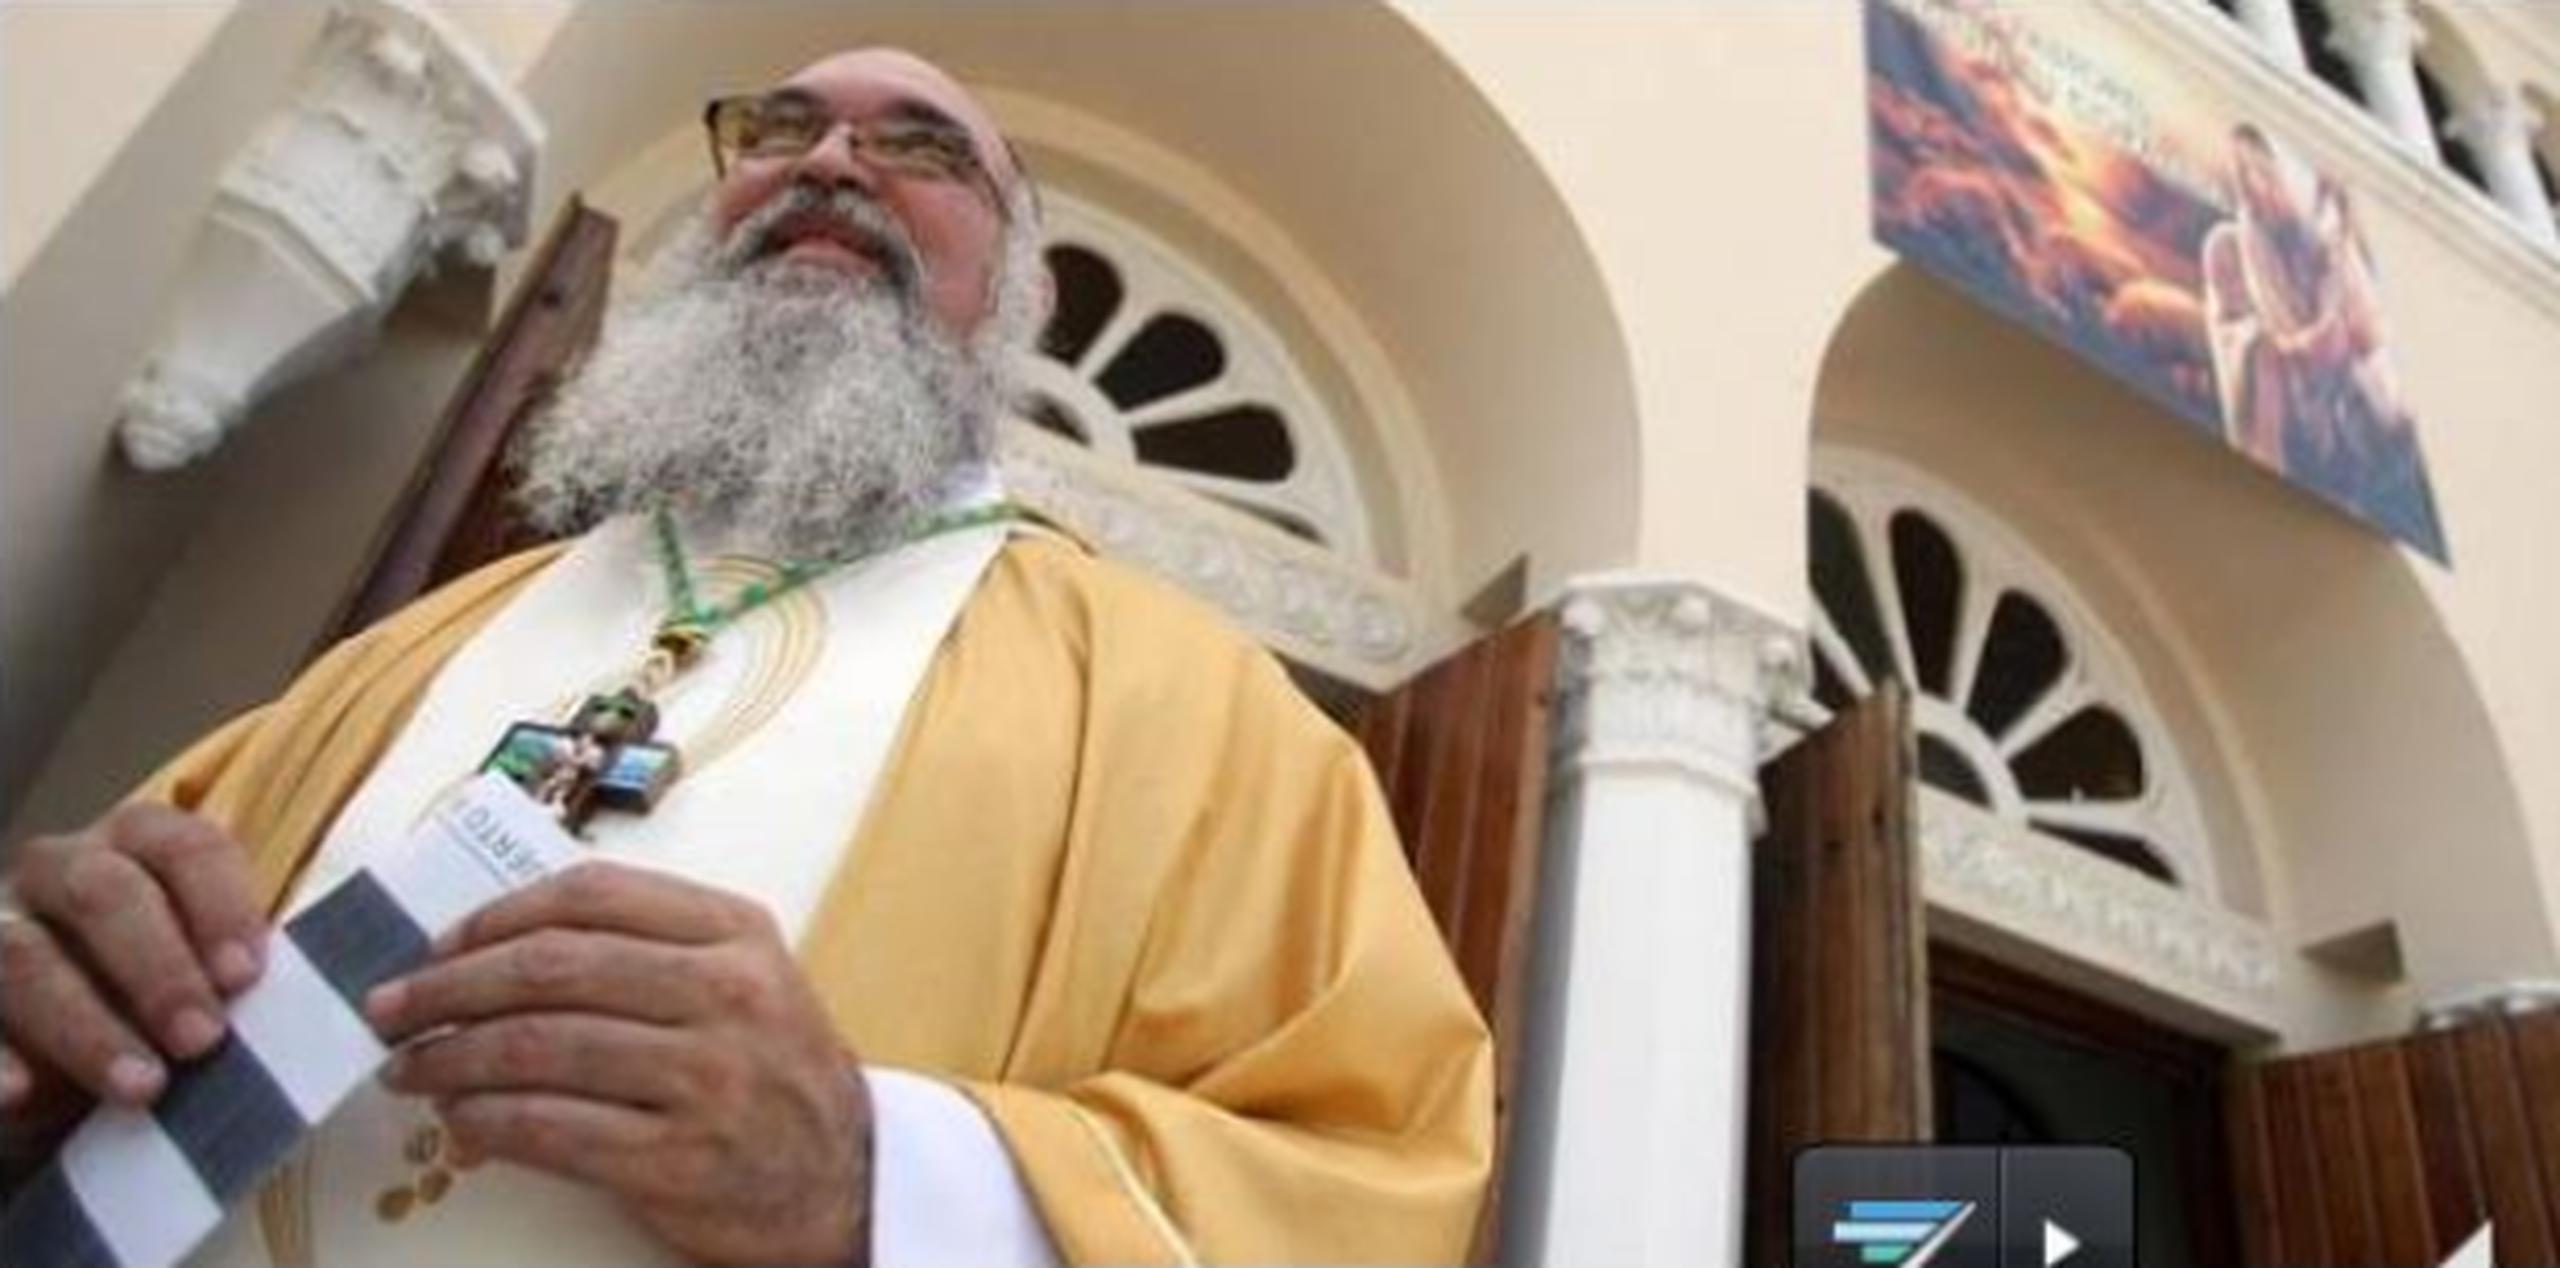 La toma de posesión del obispo Rubén González será en la Catedral Nuestra Señora de Guadalupe. (Archivo)